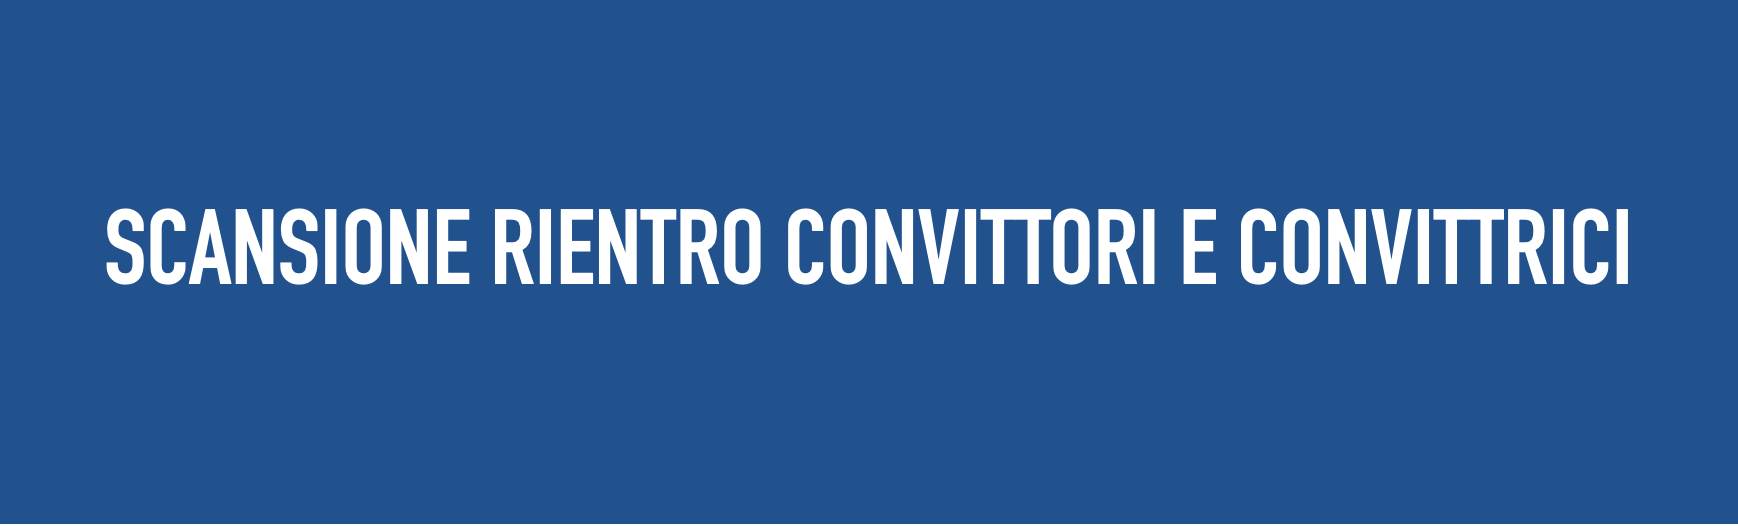 COMUNICAZIONE N. 367 – SCANSIONE RIENTRO CONVITTORI E CONVITTRICI